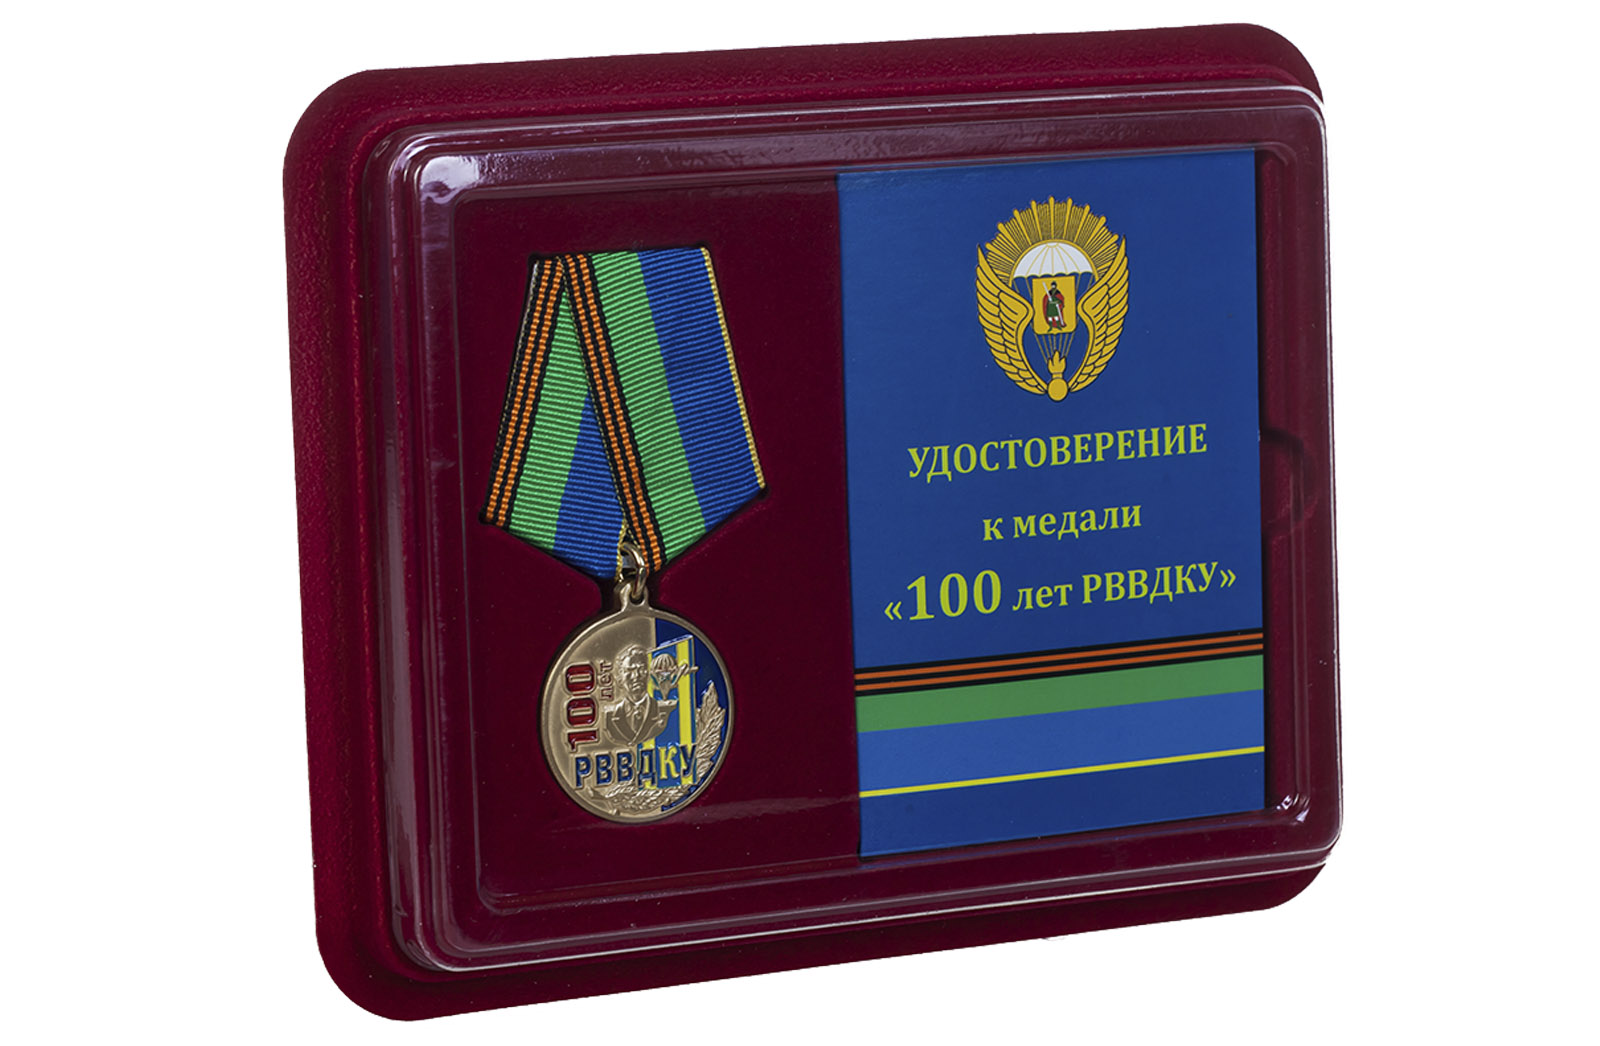 Купить памятную медаль 100 лет РВВДКУ по экономичной цене